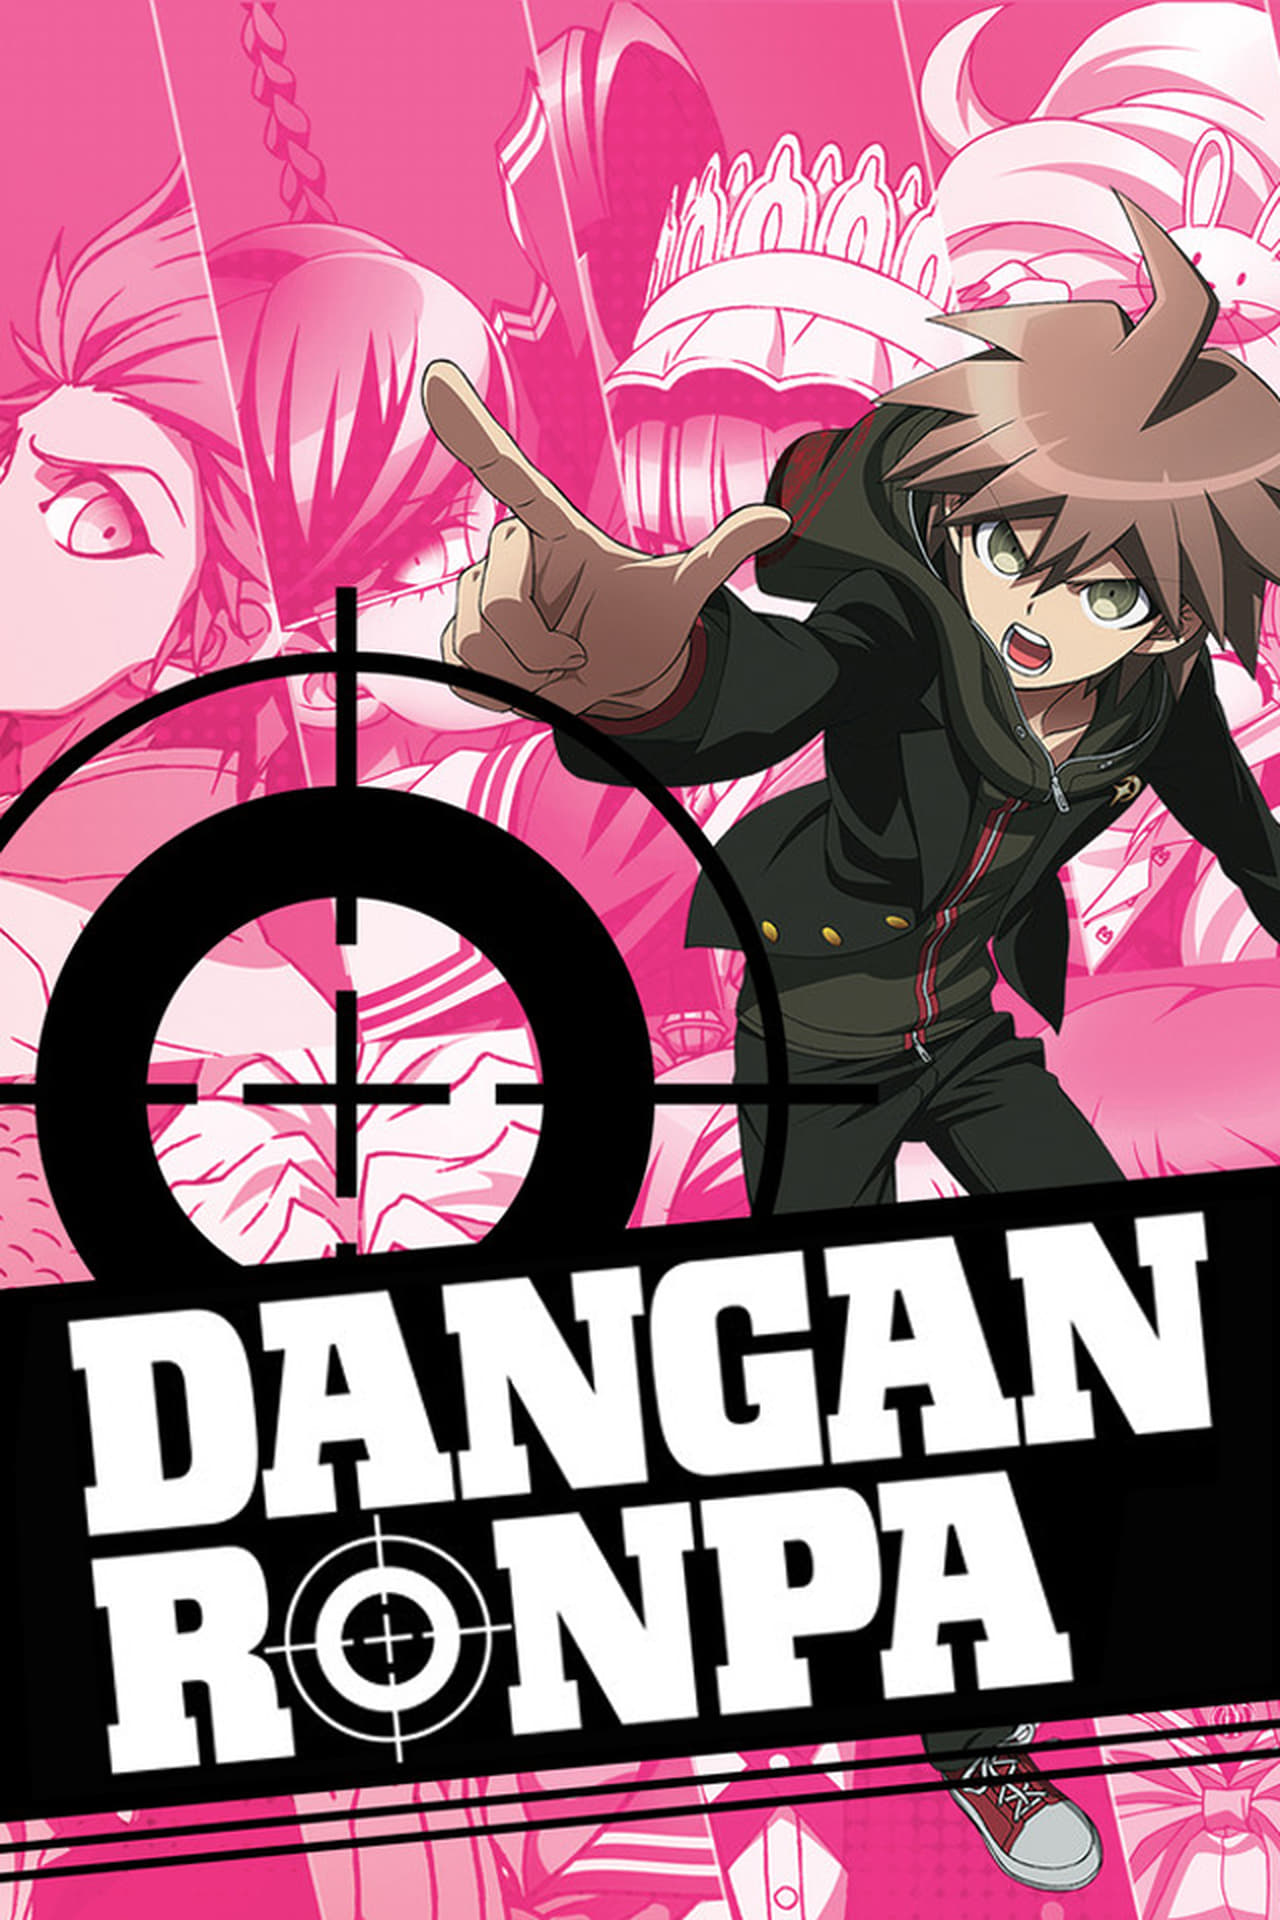 Danganronpa Order Anime And Games - Danganronpa Anime comes to DVD and